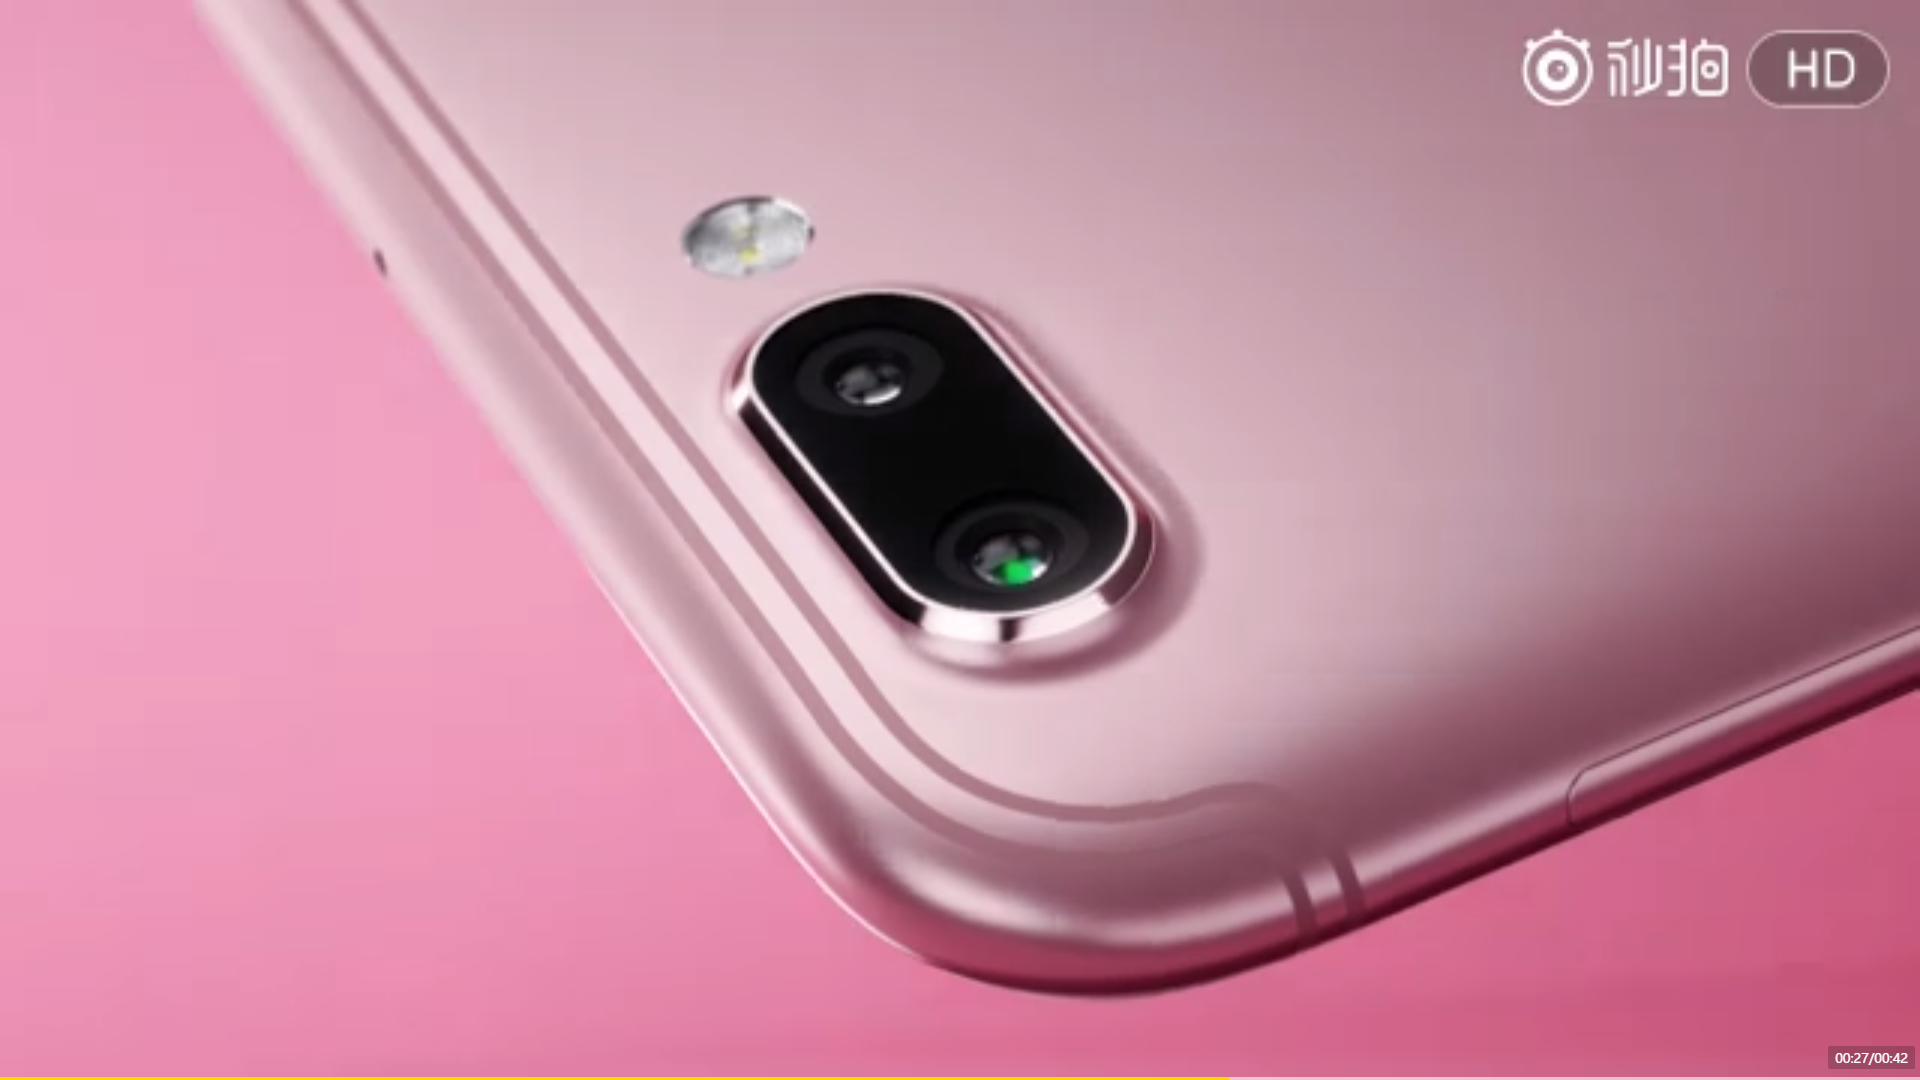 El avance de Oppo R11 revela el color rosa, dorado y negro del dispositivo